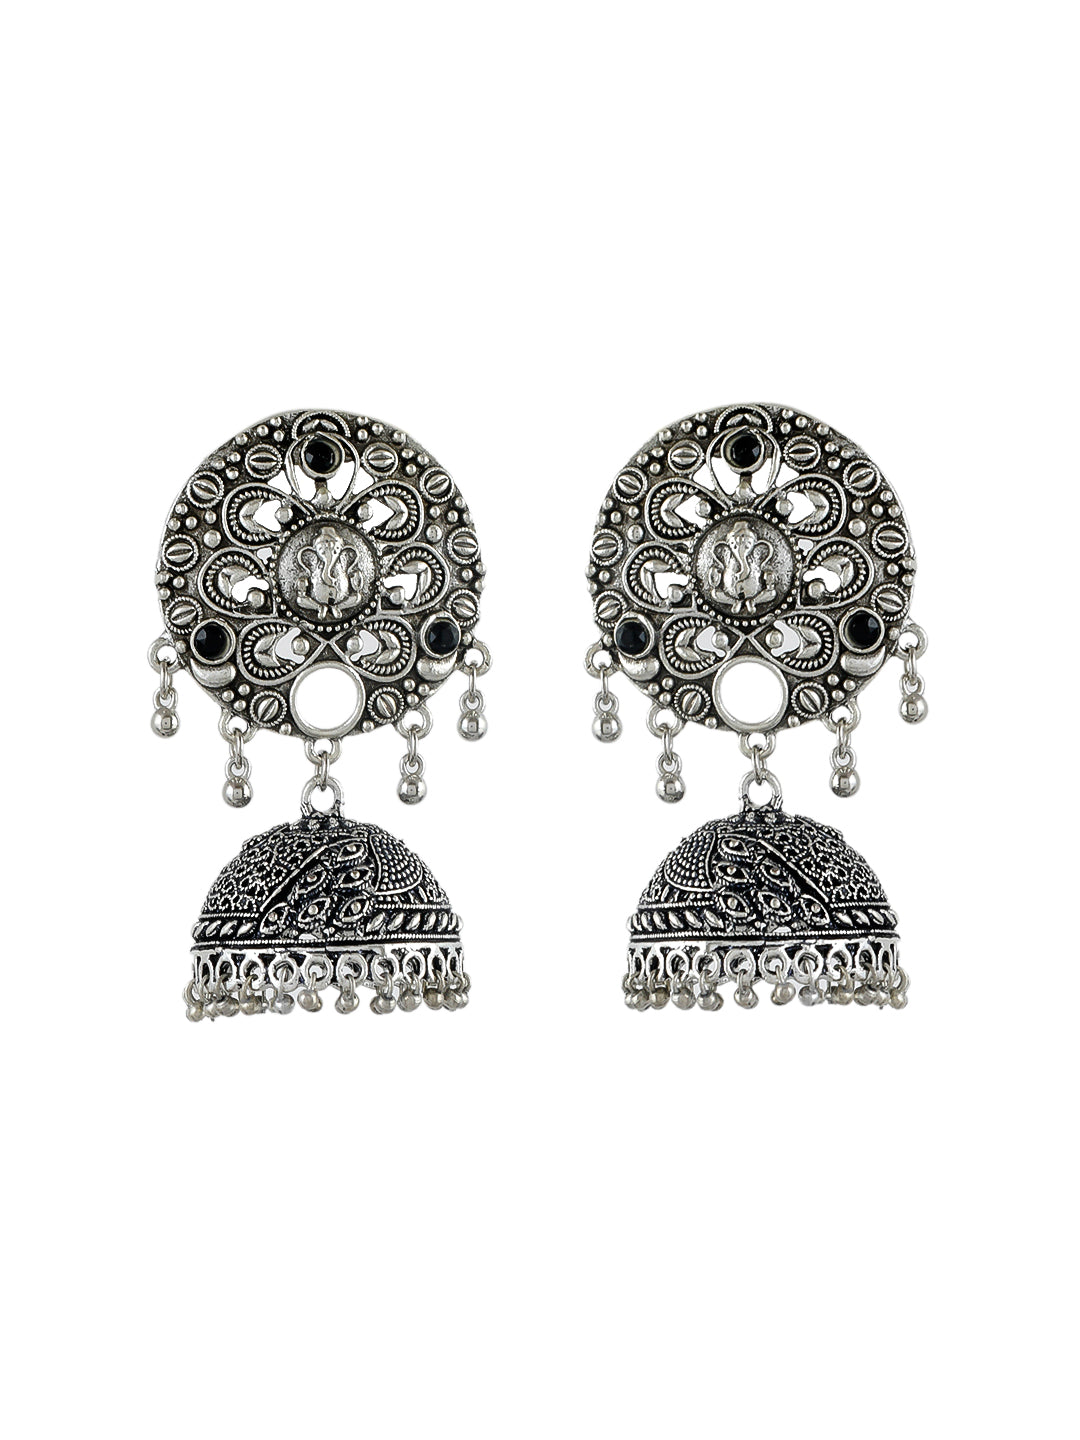 Oxidised silver jhumka earring